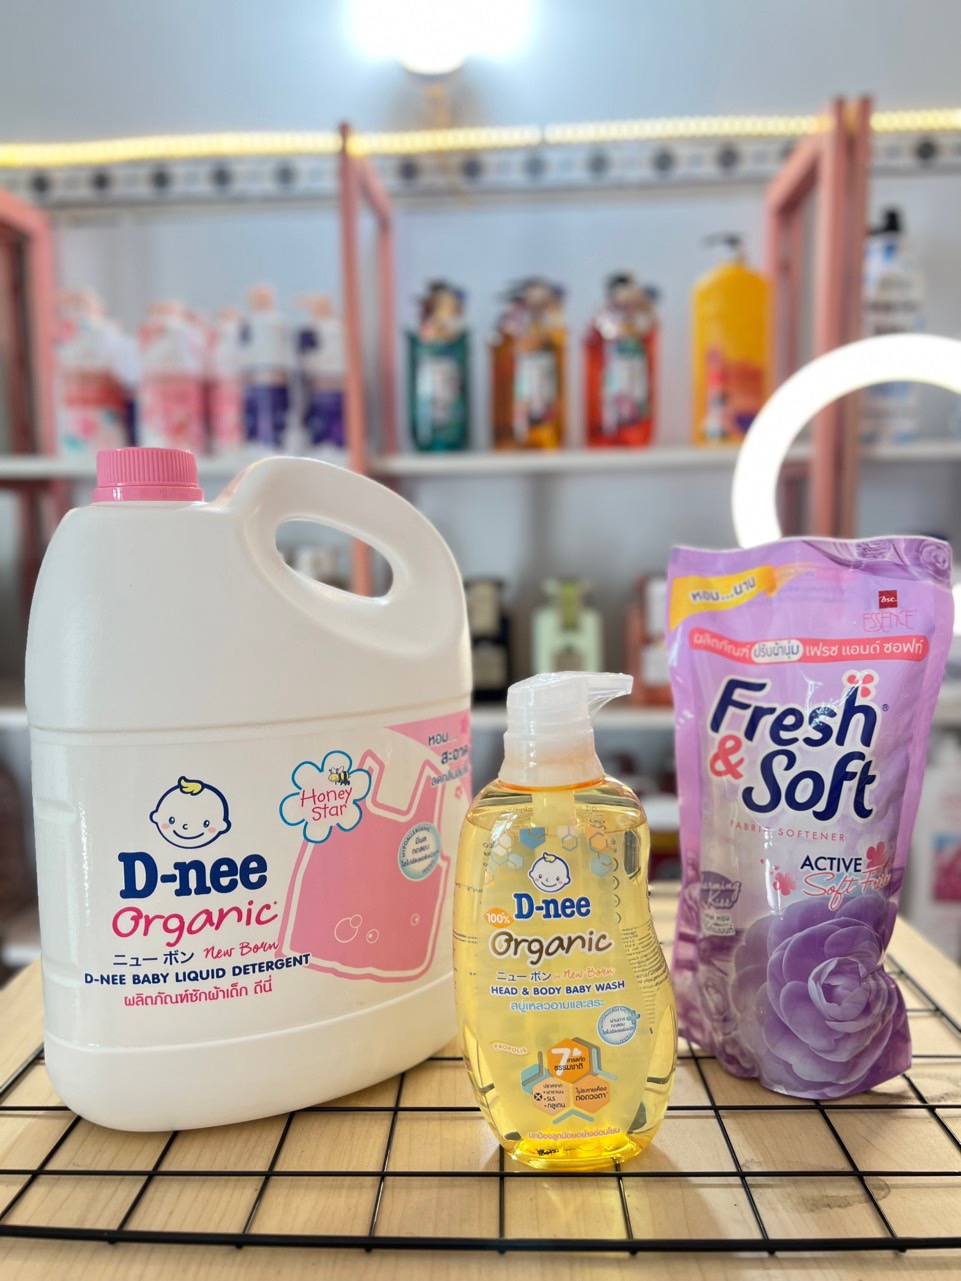 [Mua Combo Giá Rẻ] Combo gồm Giặt D-nee-tắm gội Dnee-nước xả Fresh Soft Thái Lan